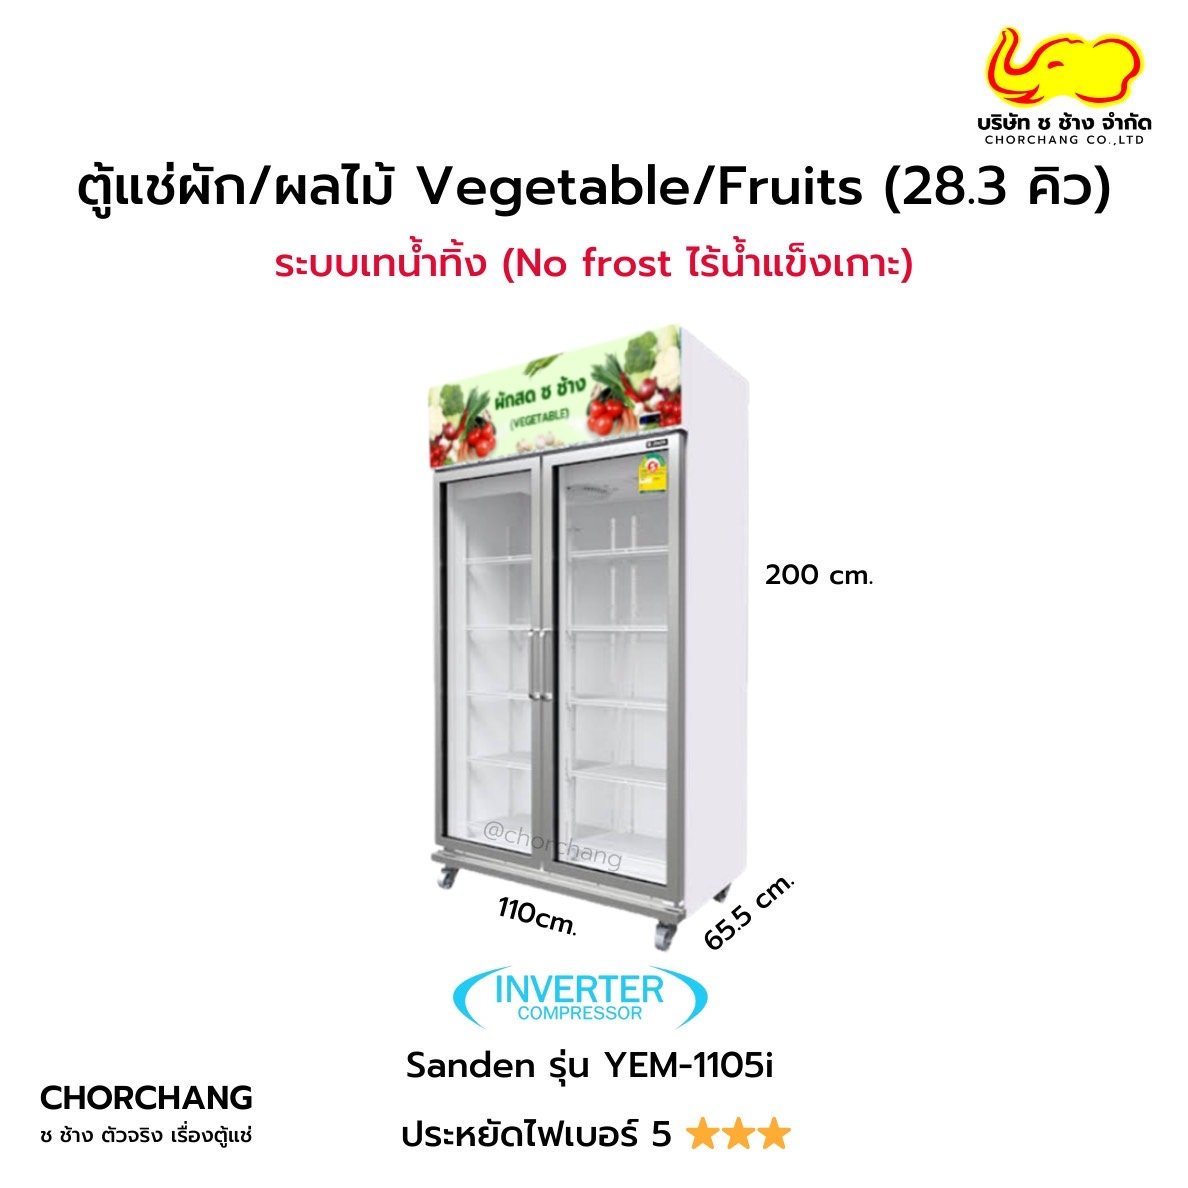 ตู้แช่ผัก/ผลไม้ Vegetable/Fruits 28.3 คิว รุ่น YEM-1105i